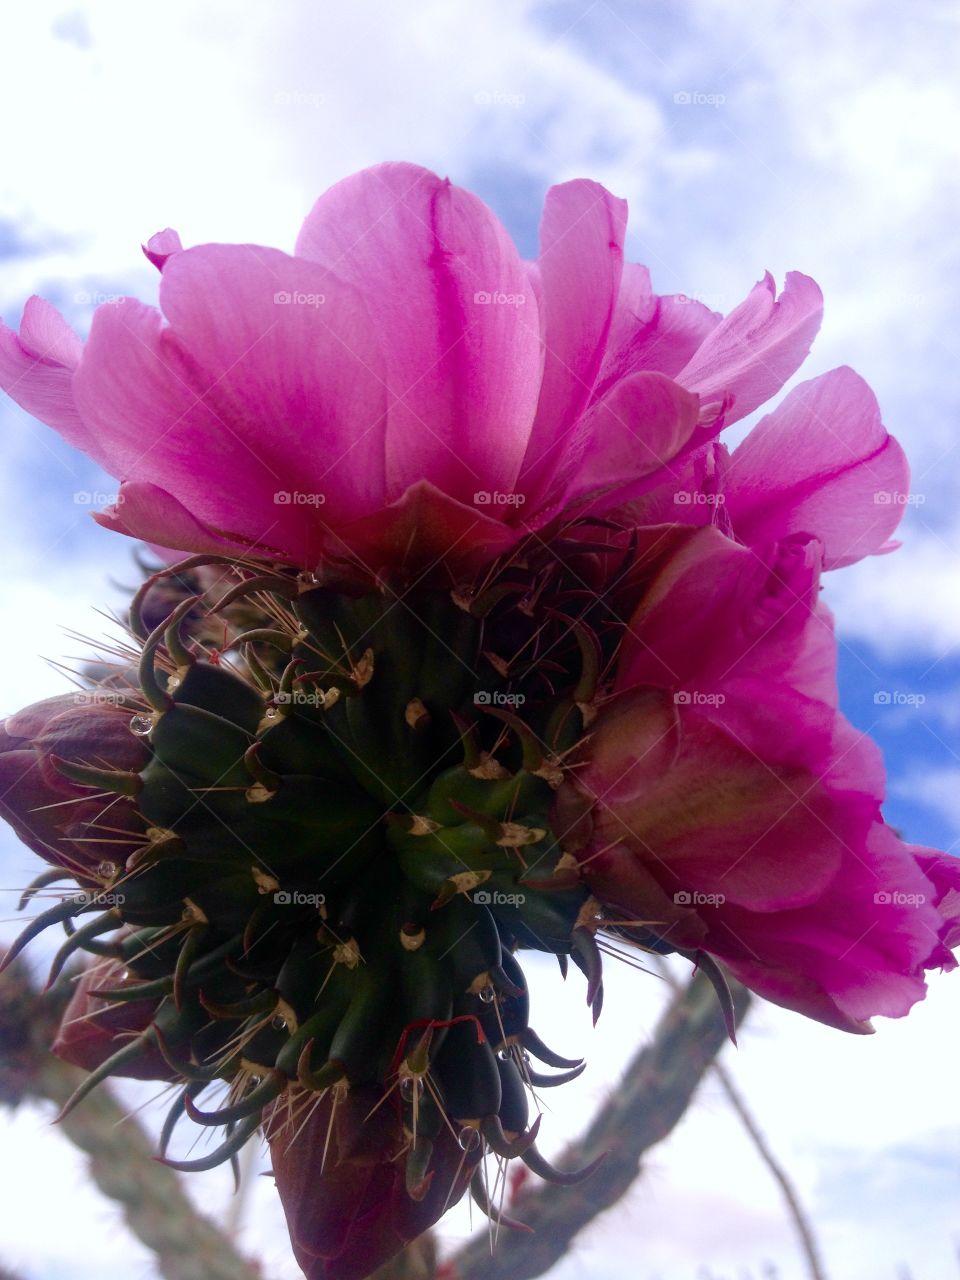 Cactus flower. Cactus in bloom